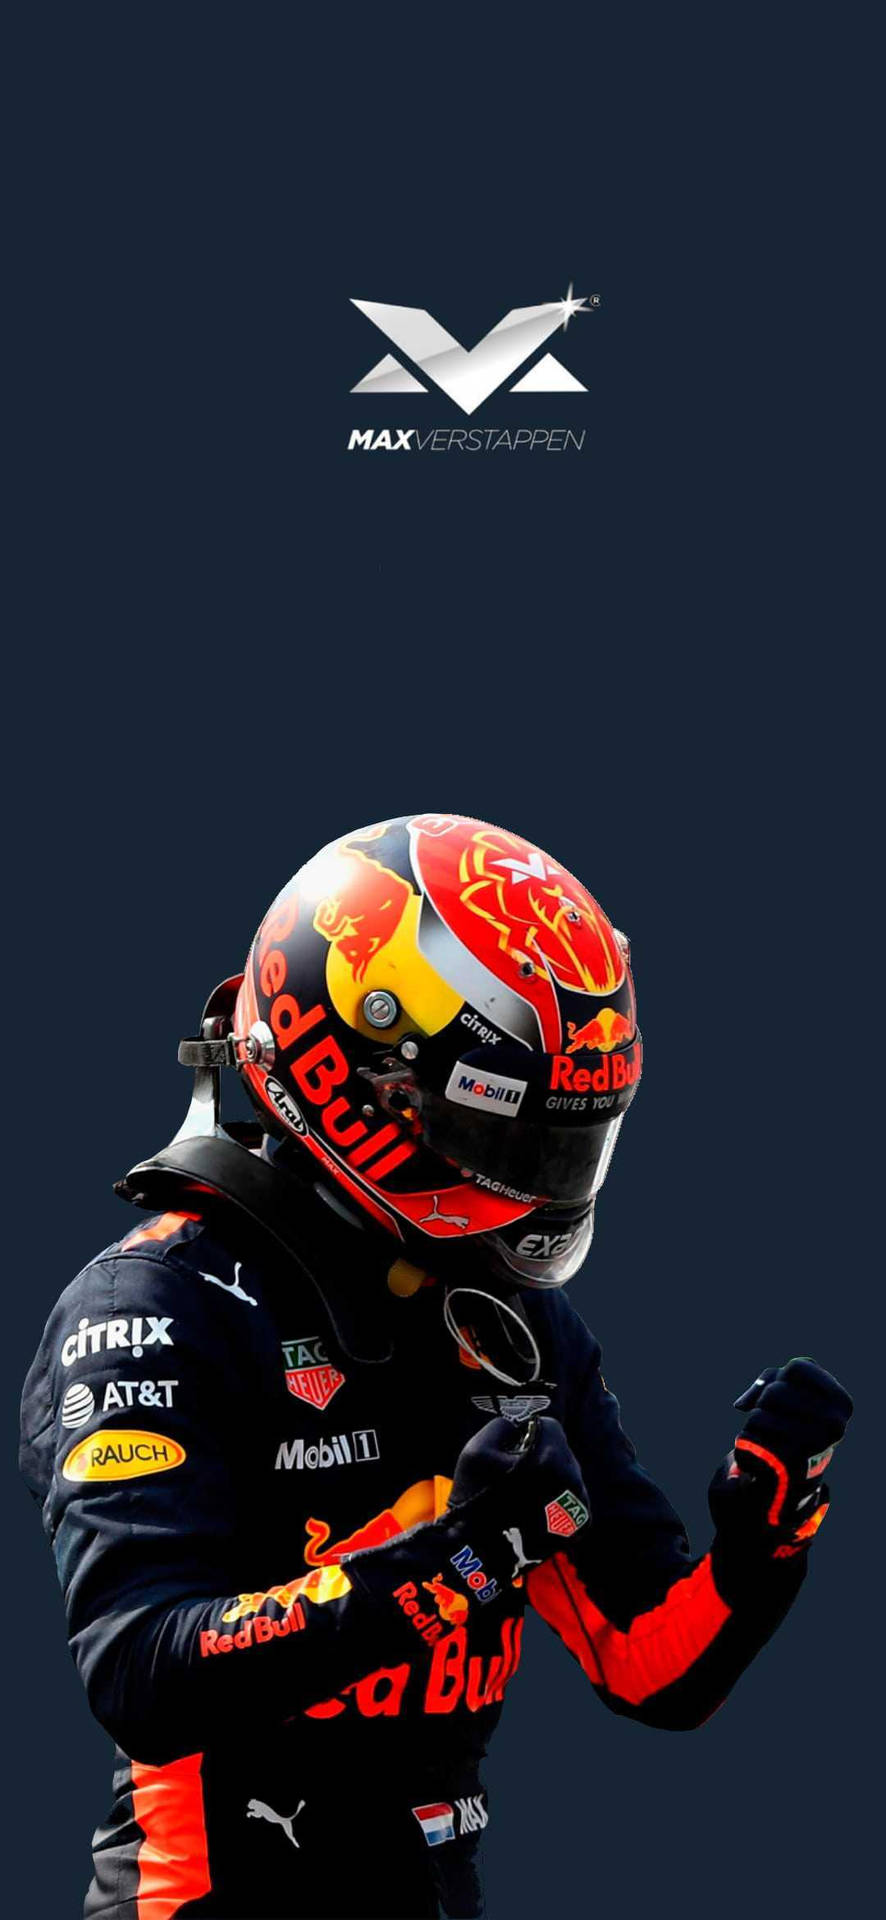 Max Verstappen Red Bull Racing Suit